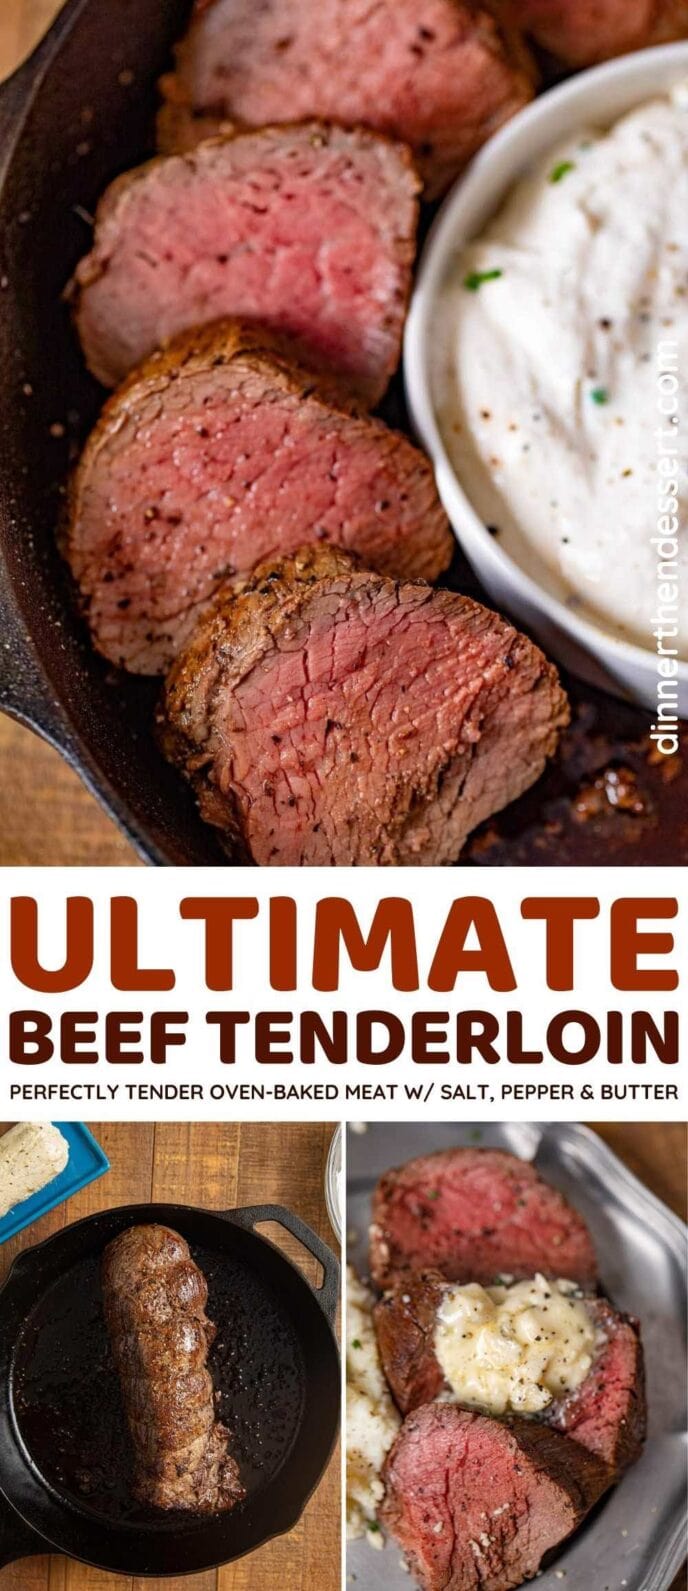 Beef Tenderloin collage